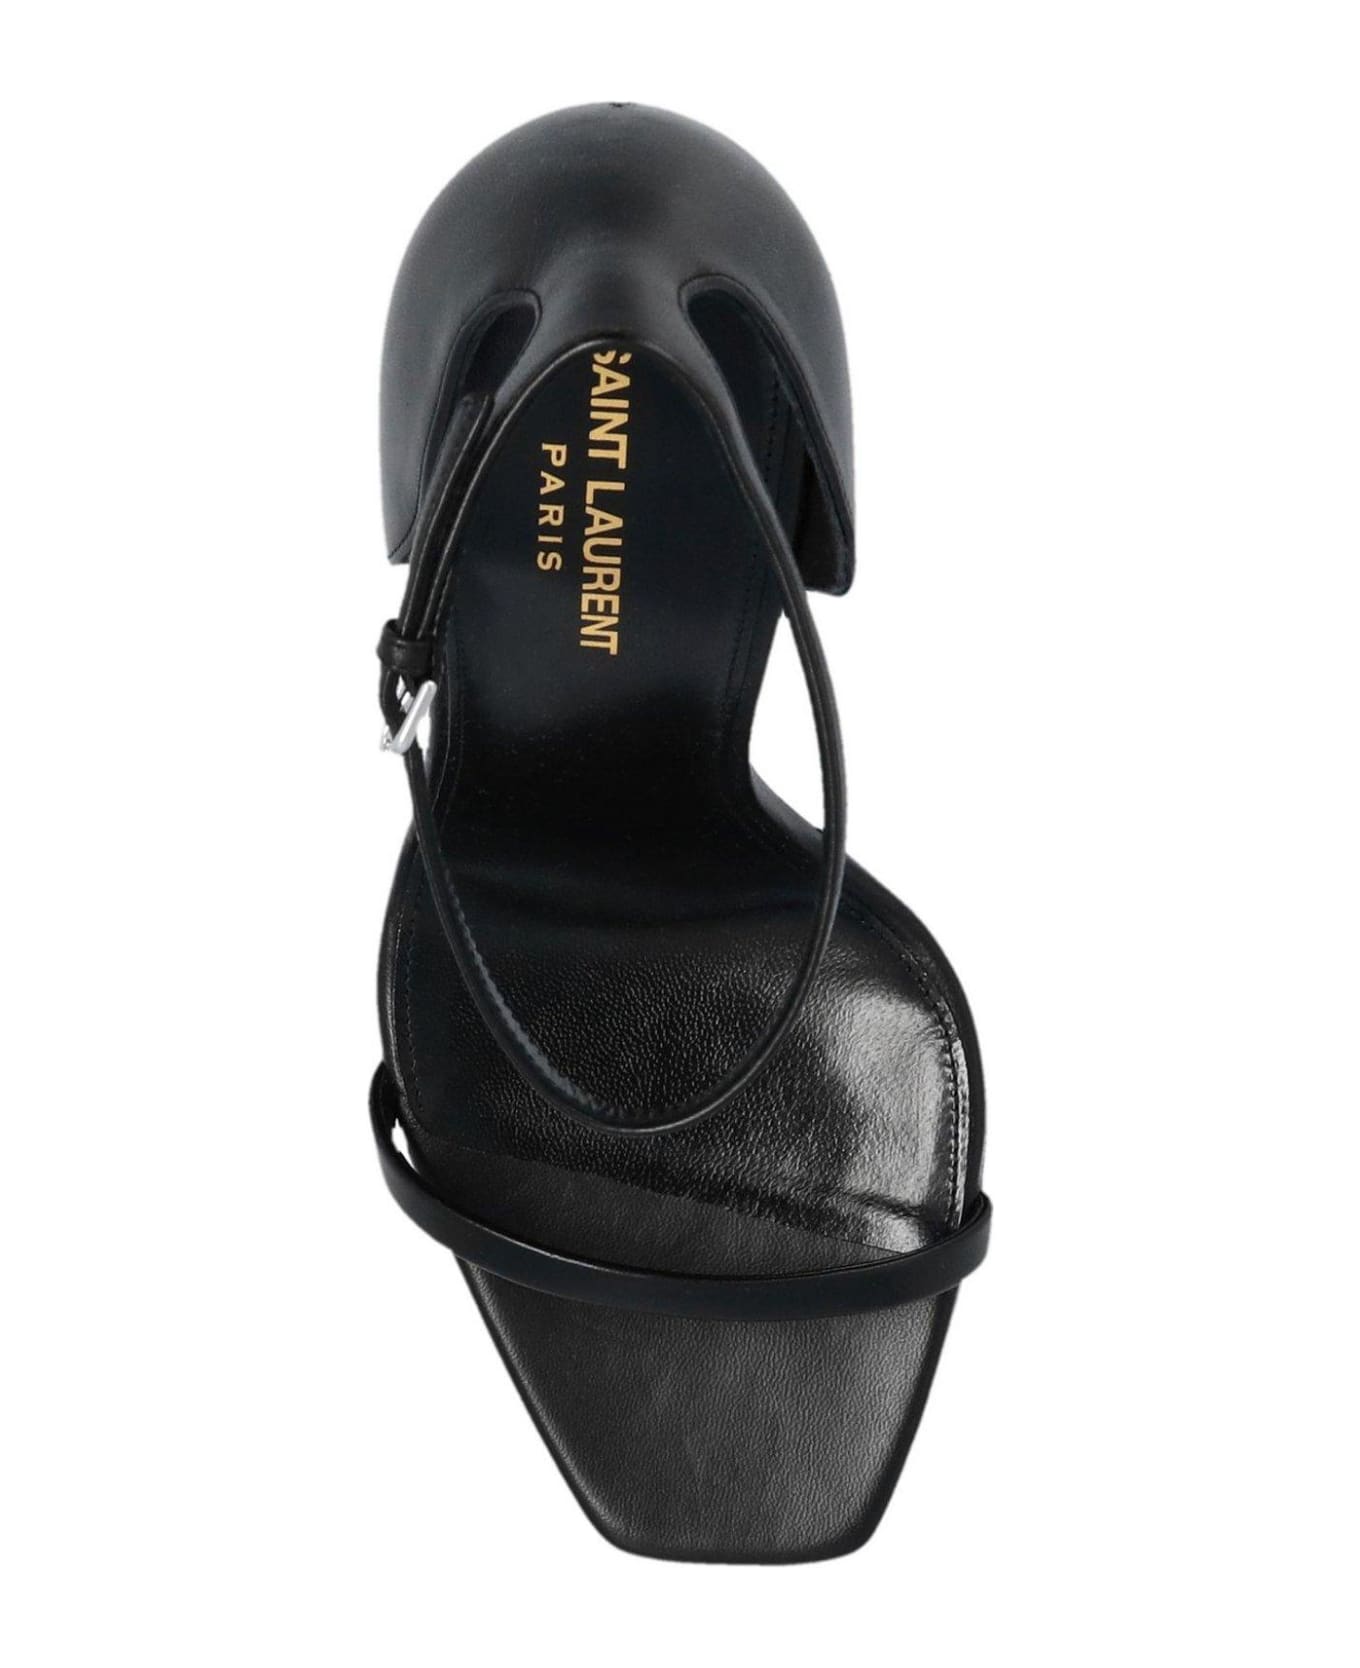 Saint Laurent Opyum Ankle-strap Sandals - BLACK